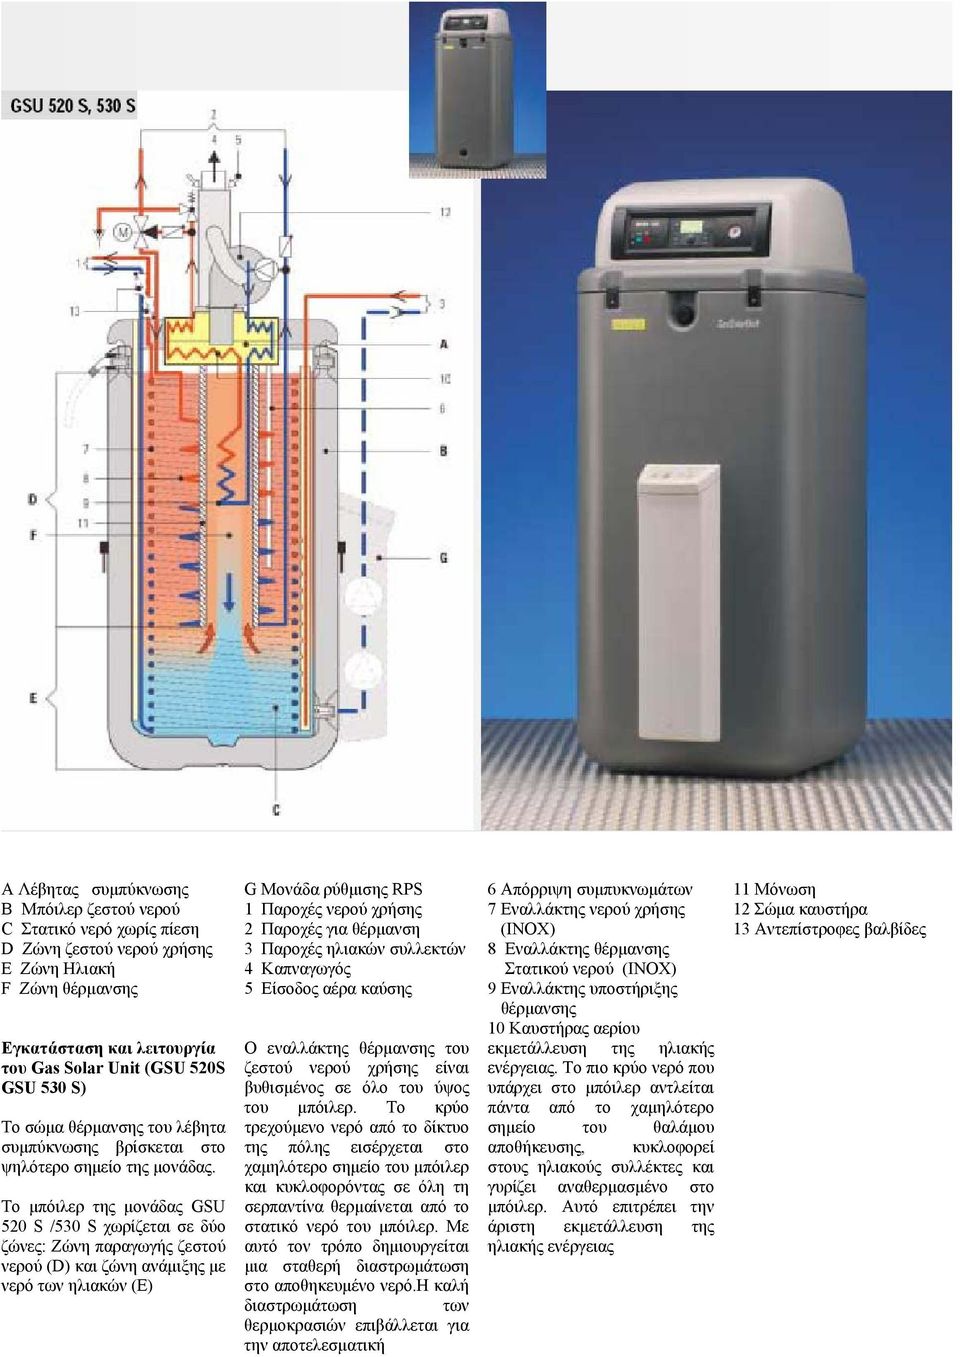 Είσοδος αέρα καύσης 9 Εναλλάκτης υποστήριξης θέρµανσης 10 Καυστήρας αερίου Εγκατάσταση και λειτουργία του Gas Solar Unit (GSU 520S GSU 530 S) To σώµα θέρµανσης του λέβητα συµπύκνωσης βρίσκεται στο